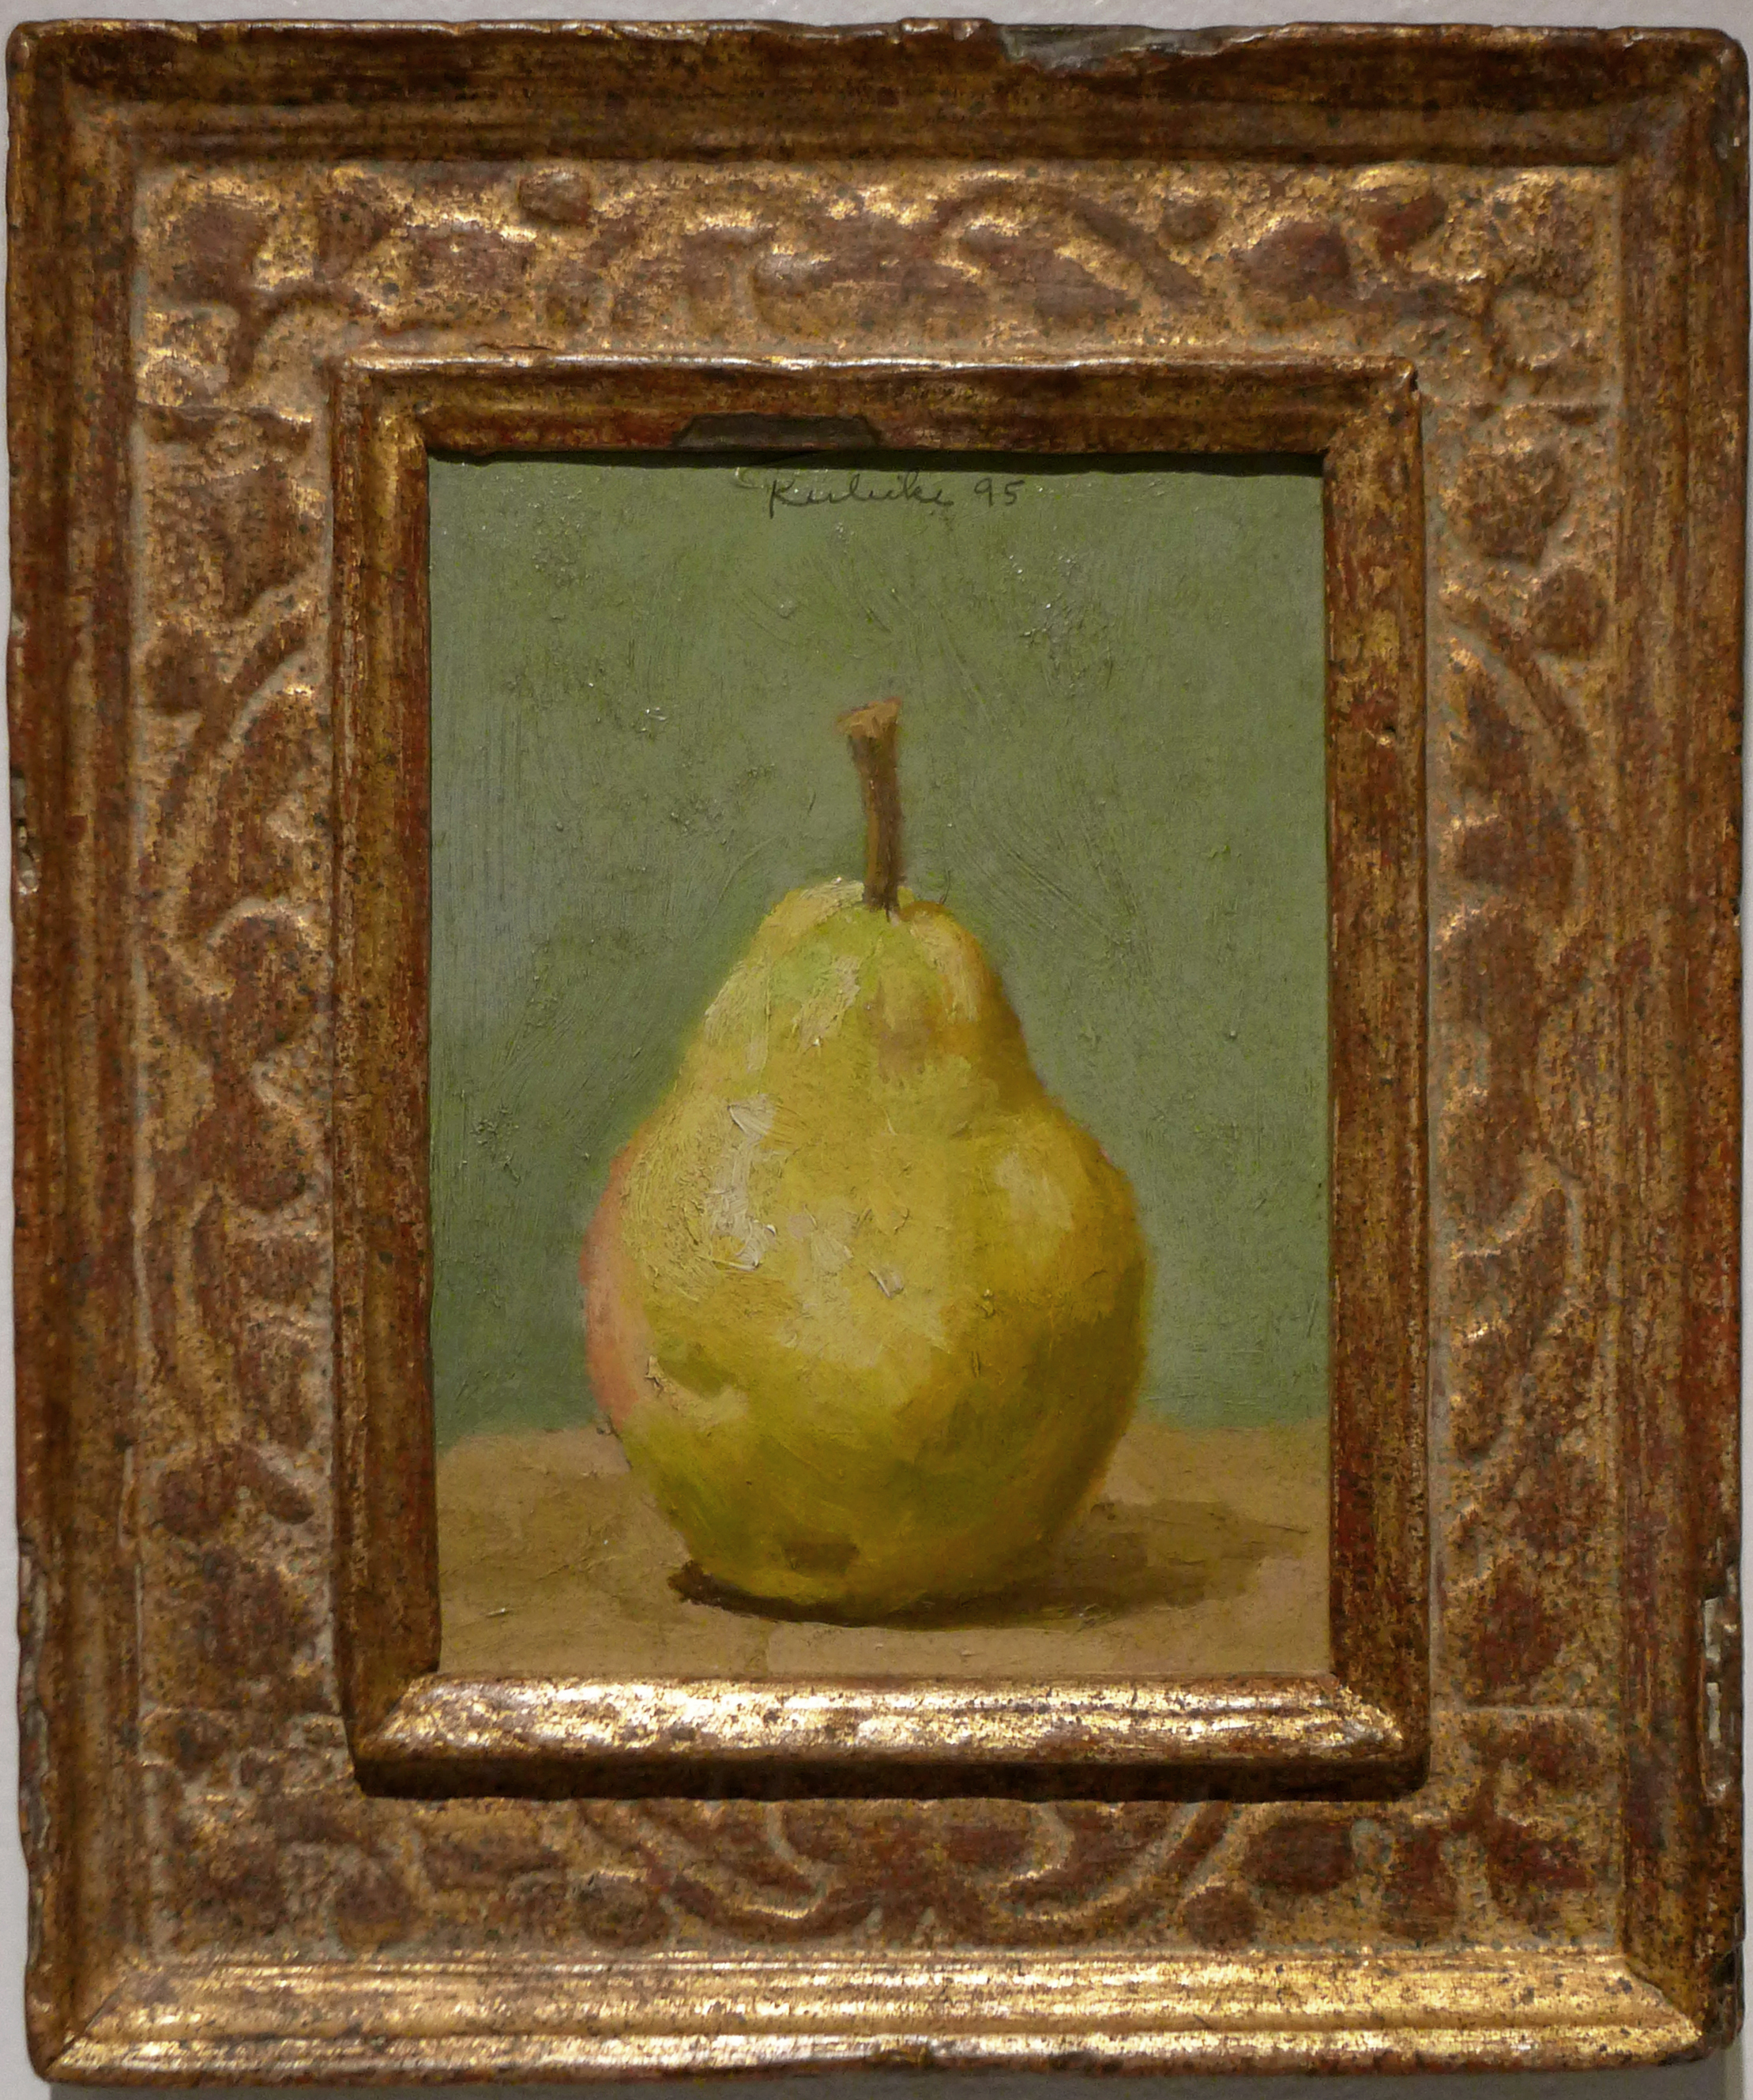 Green pear on table in frront of grreen wall in ornate gold farme